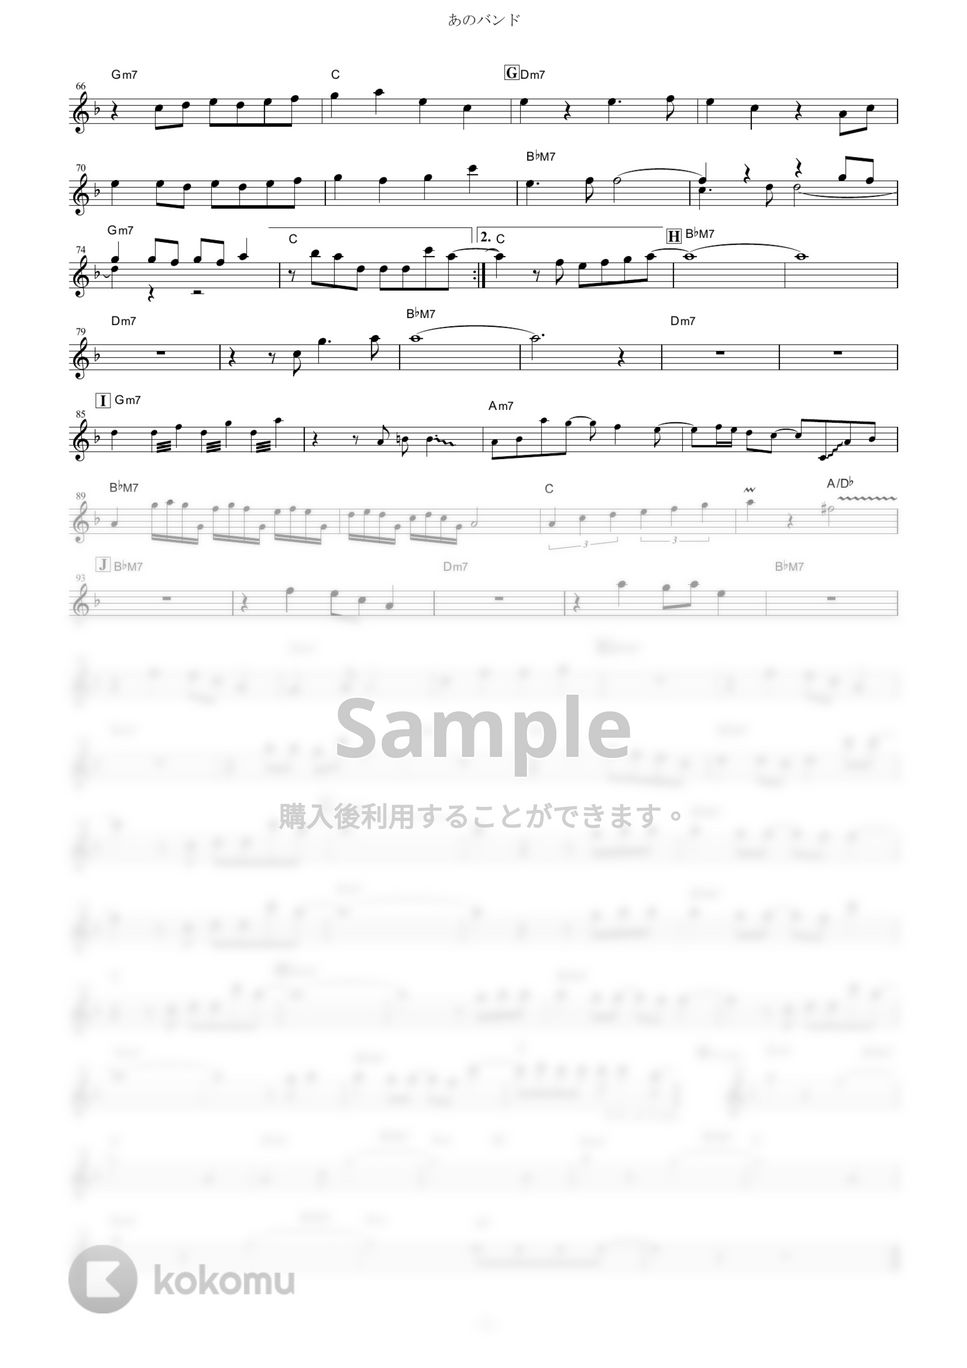 結束バンド - あのバンド (『ぼっち・ざ・ろっく！』 / in C) by muta-sax